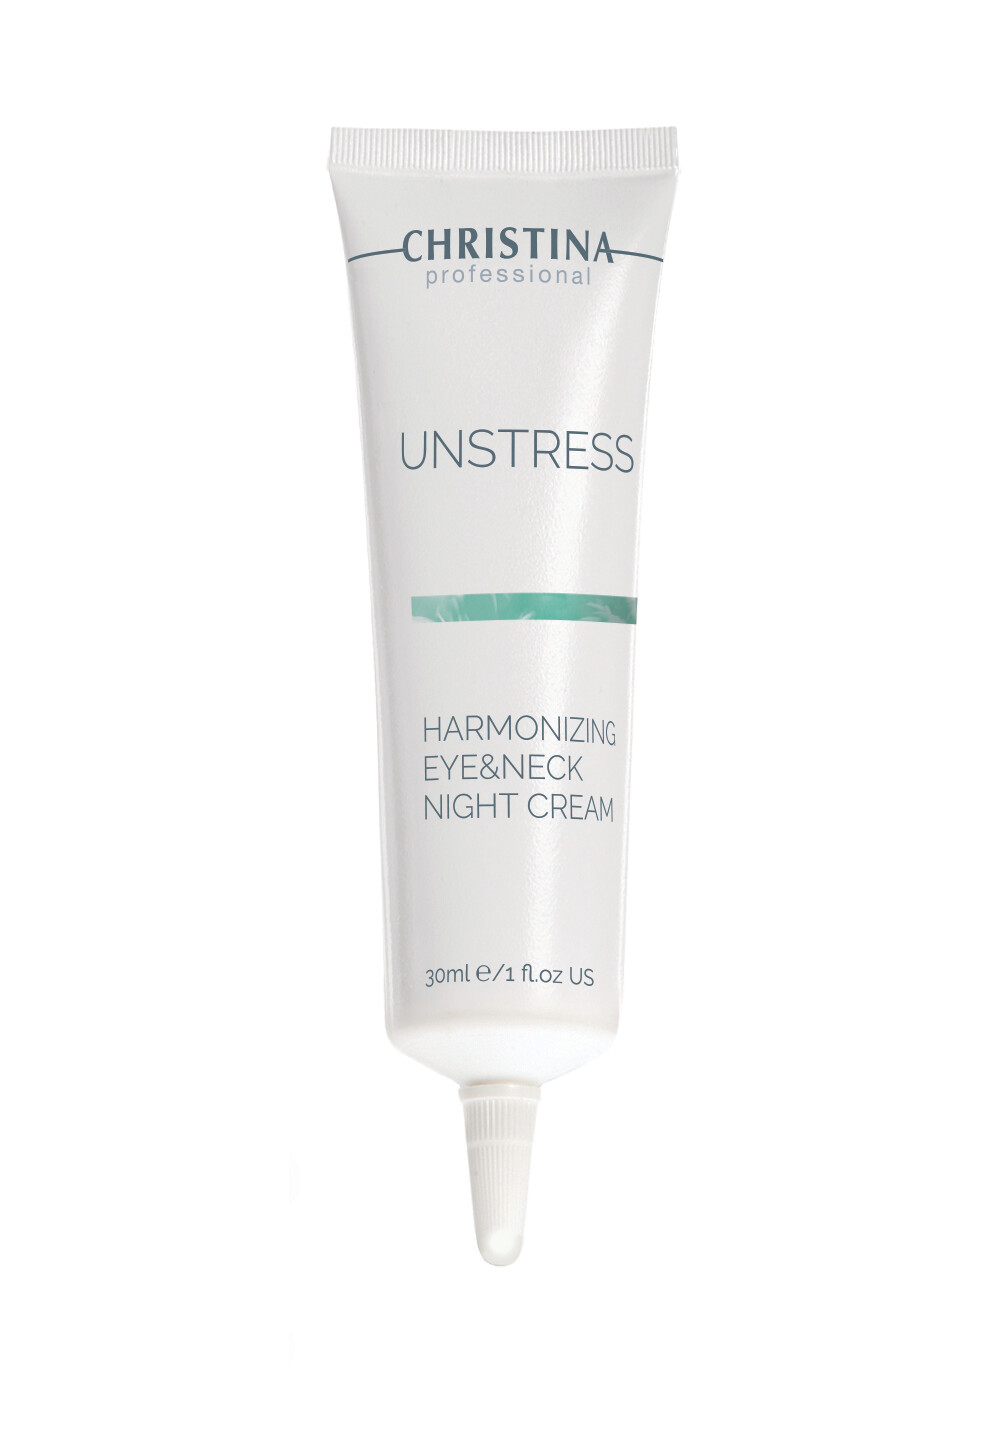 Unstress-Harmonizing Night Cream for eye and neck 30